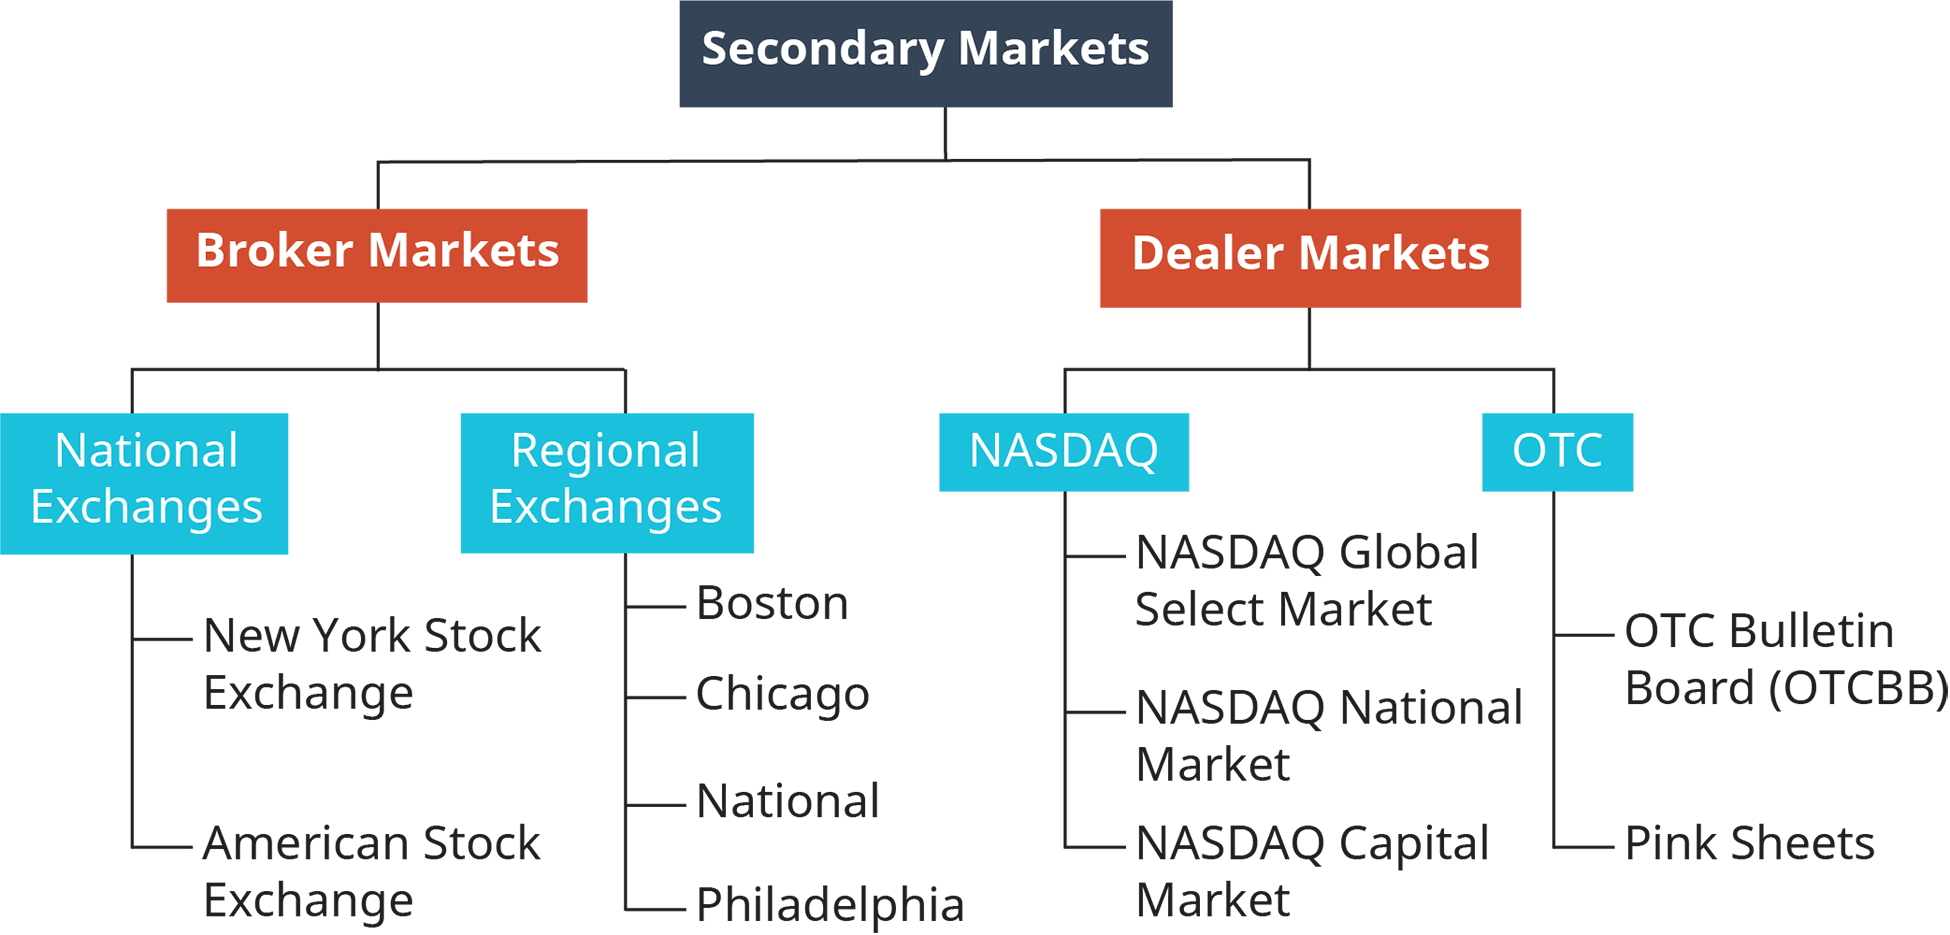 يتم تقسيم الأسواق الثانوية إلى قسمين، أسواق الوسطاء وأسواق التجار. يتم تقسيم سوق الوسطاء إلى قسمين، البورصات الوطنية والتبادلات الإقليمية. تشمل البورصات الوطنية بورصة نيويورك والبورصة الأمريكية. وتشمل التبادلات الإقليمية بوسطن وشيكاغو وناسيونال وفيلادلفيا. تنقسم أسواق الوكلاء إلى قسمين: Nasdaq و O T C. Nasdaq يشمل سوق Nasdaq العالمي المختار وسوق Nasdaq الوطني وسوق Nasdaq تتضمن O T C لوحة إعلانات O T C، تسمى O T C B؛ وأوراق وردية.